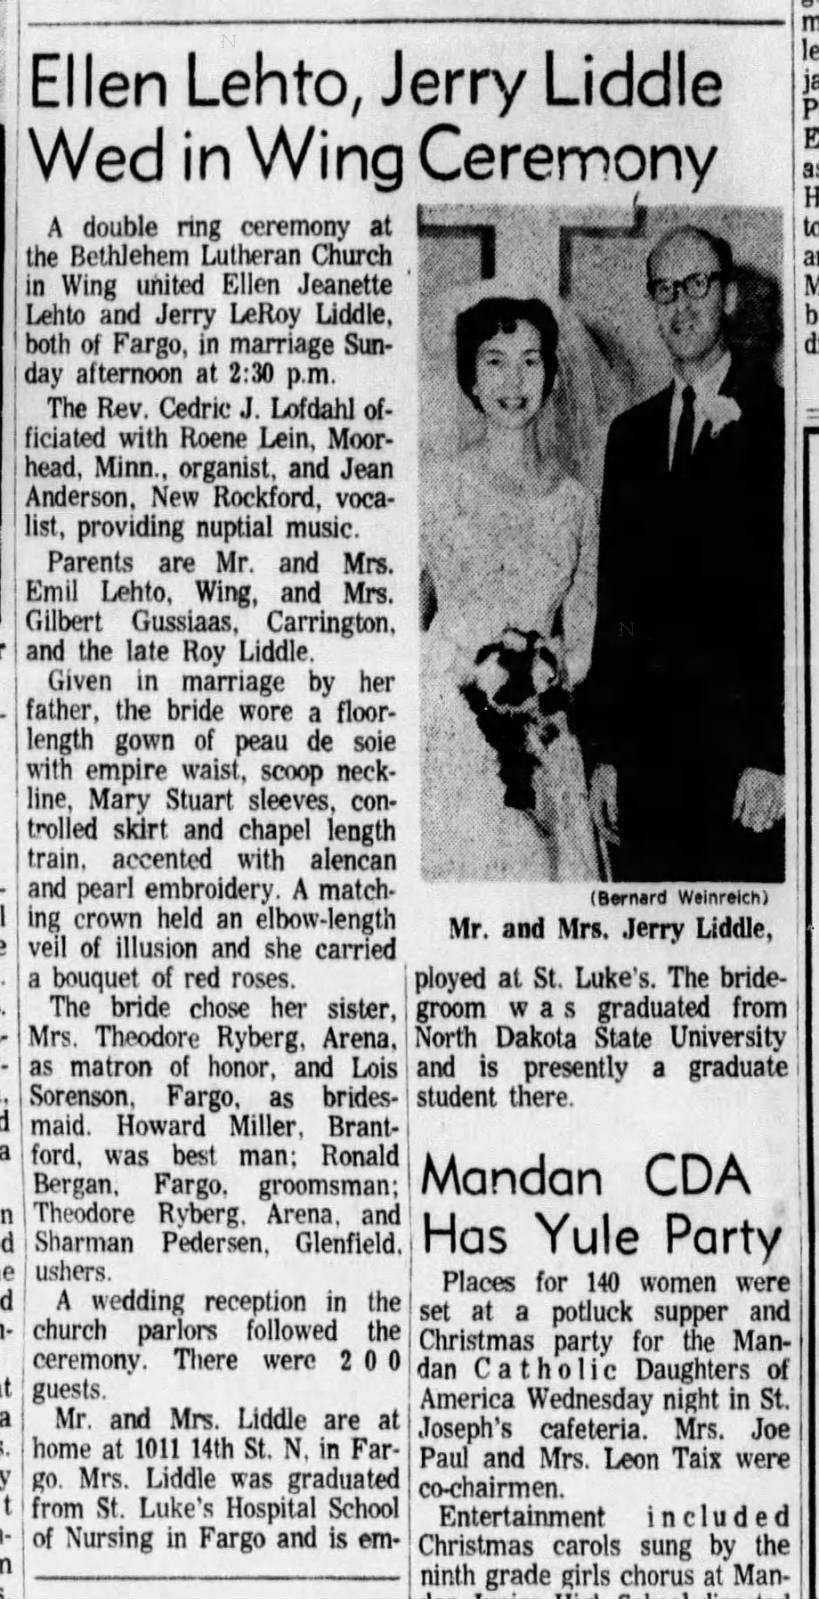 Ellen Lehto, Jerry Liddle Wed in Wing Ceremony